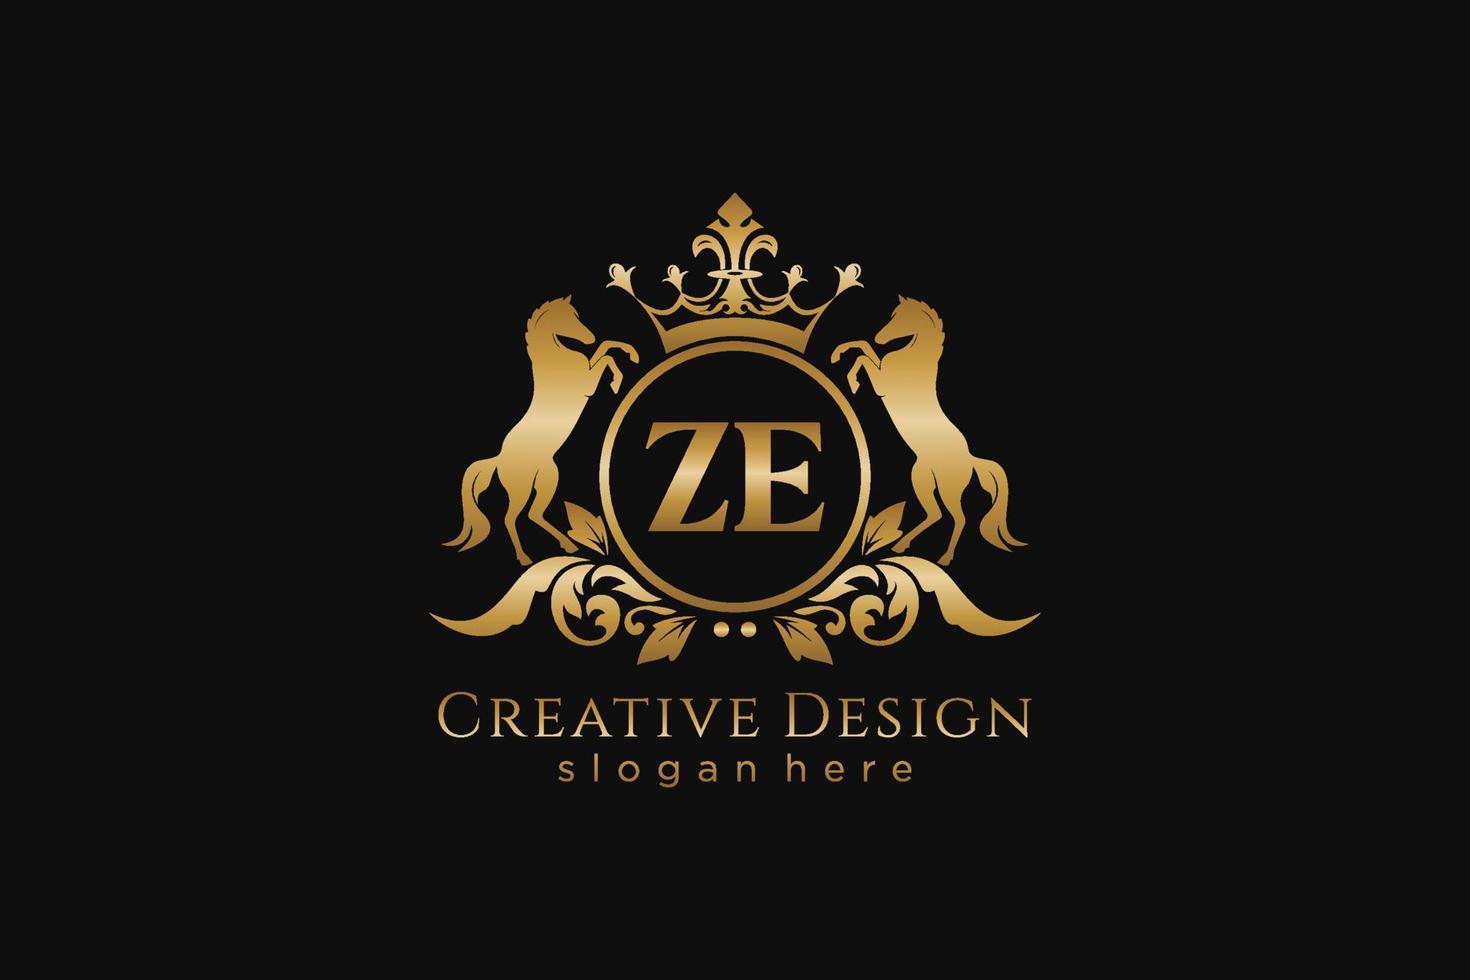 cresta dorada retro ze inicial con círculo y dos caballos, plantilla de placa con pergaminos y corona real - perfecto para proyectos de marca de lujo vector